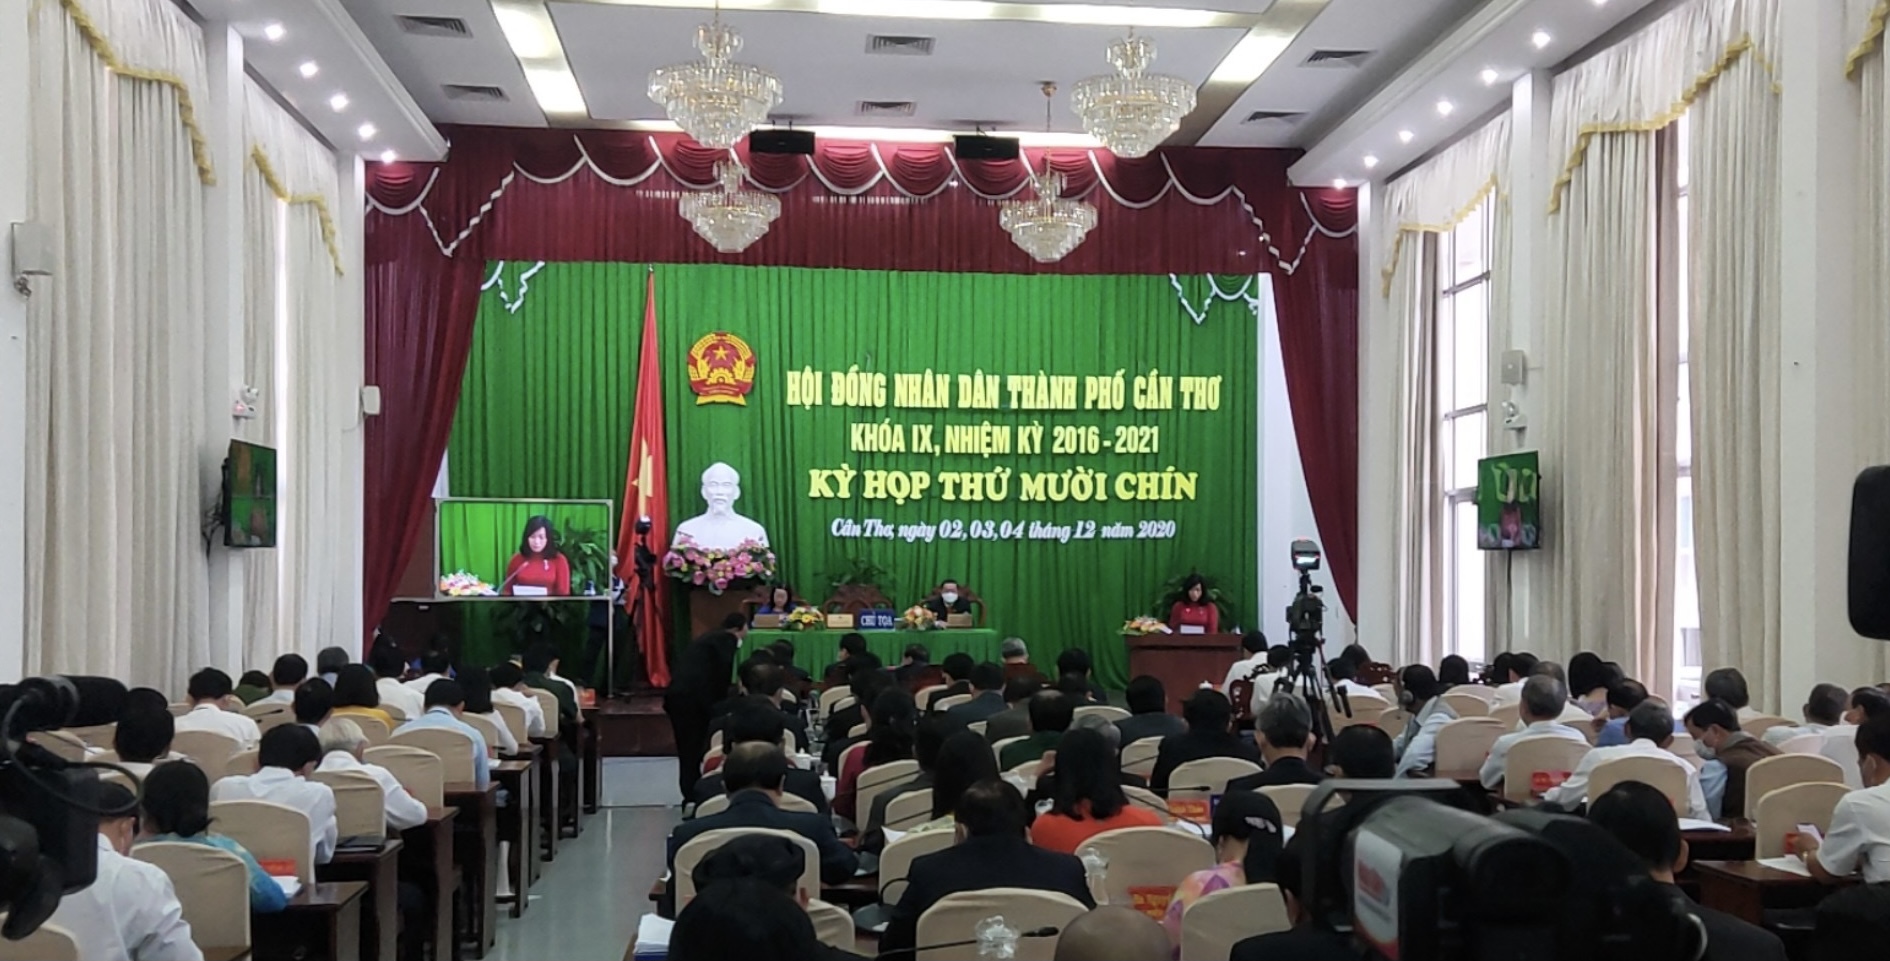 		Kỳ họp thứ 19 nhiệm kỳ 2016-2021 HĐND thành phố Cần Thơ